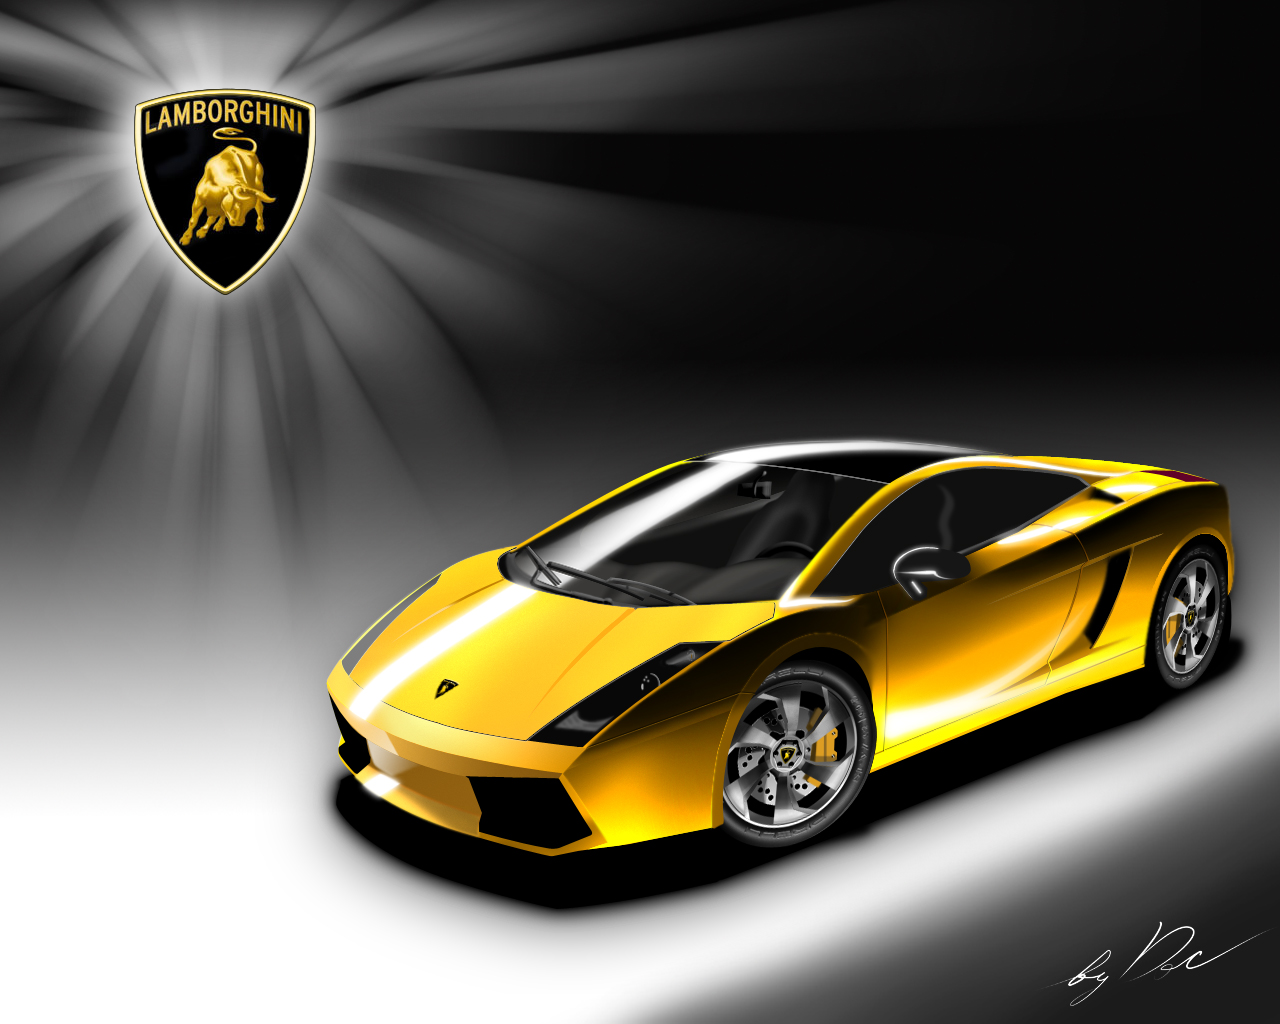 Free download Lamborghini Wallpaper Sangar [1280x1024] for your Desktop